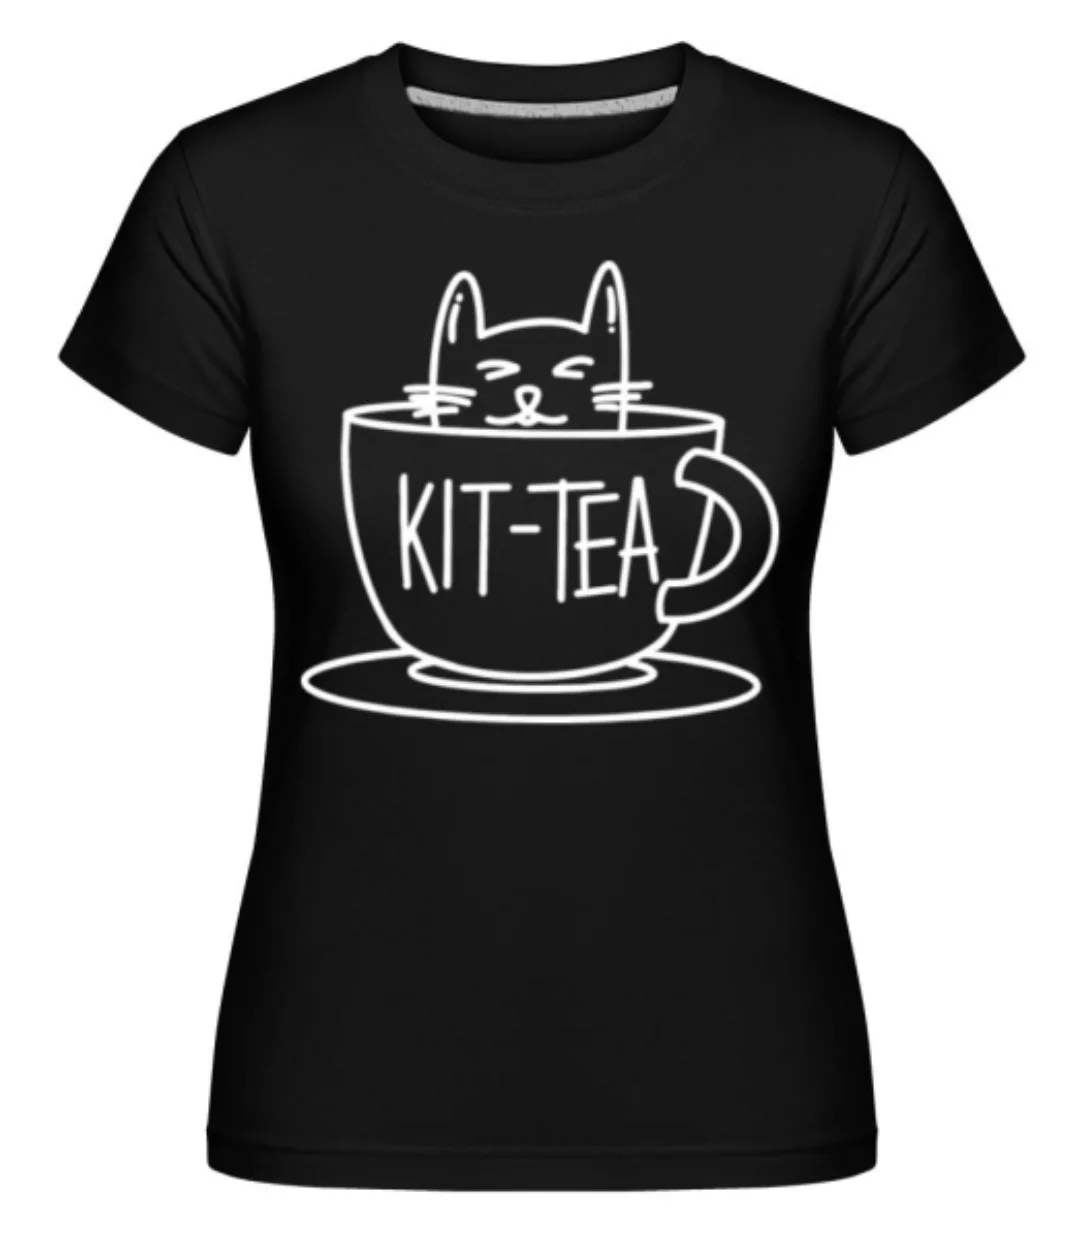 Kittea · Shirtinator Frauen T-Shirt günstig online kaufen